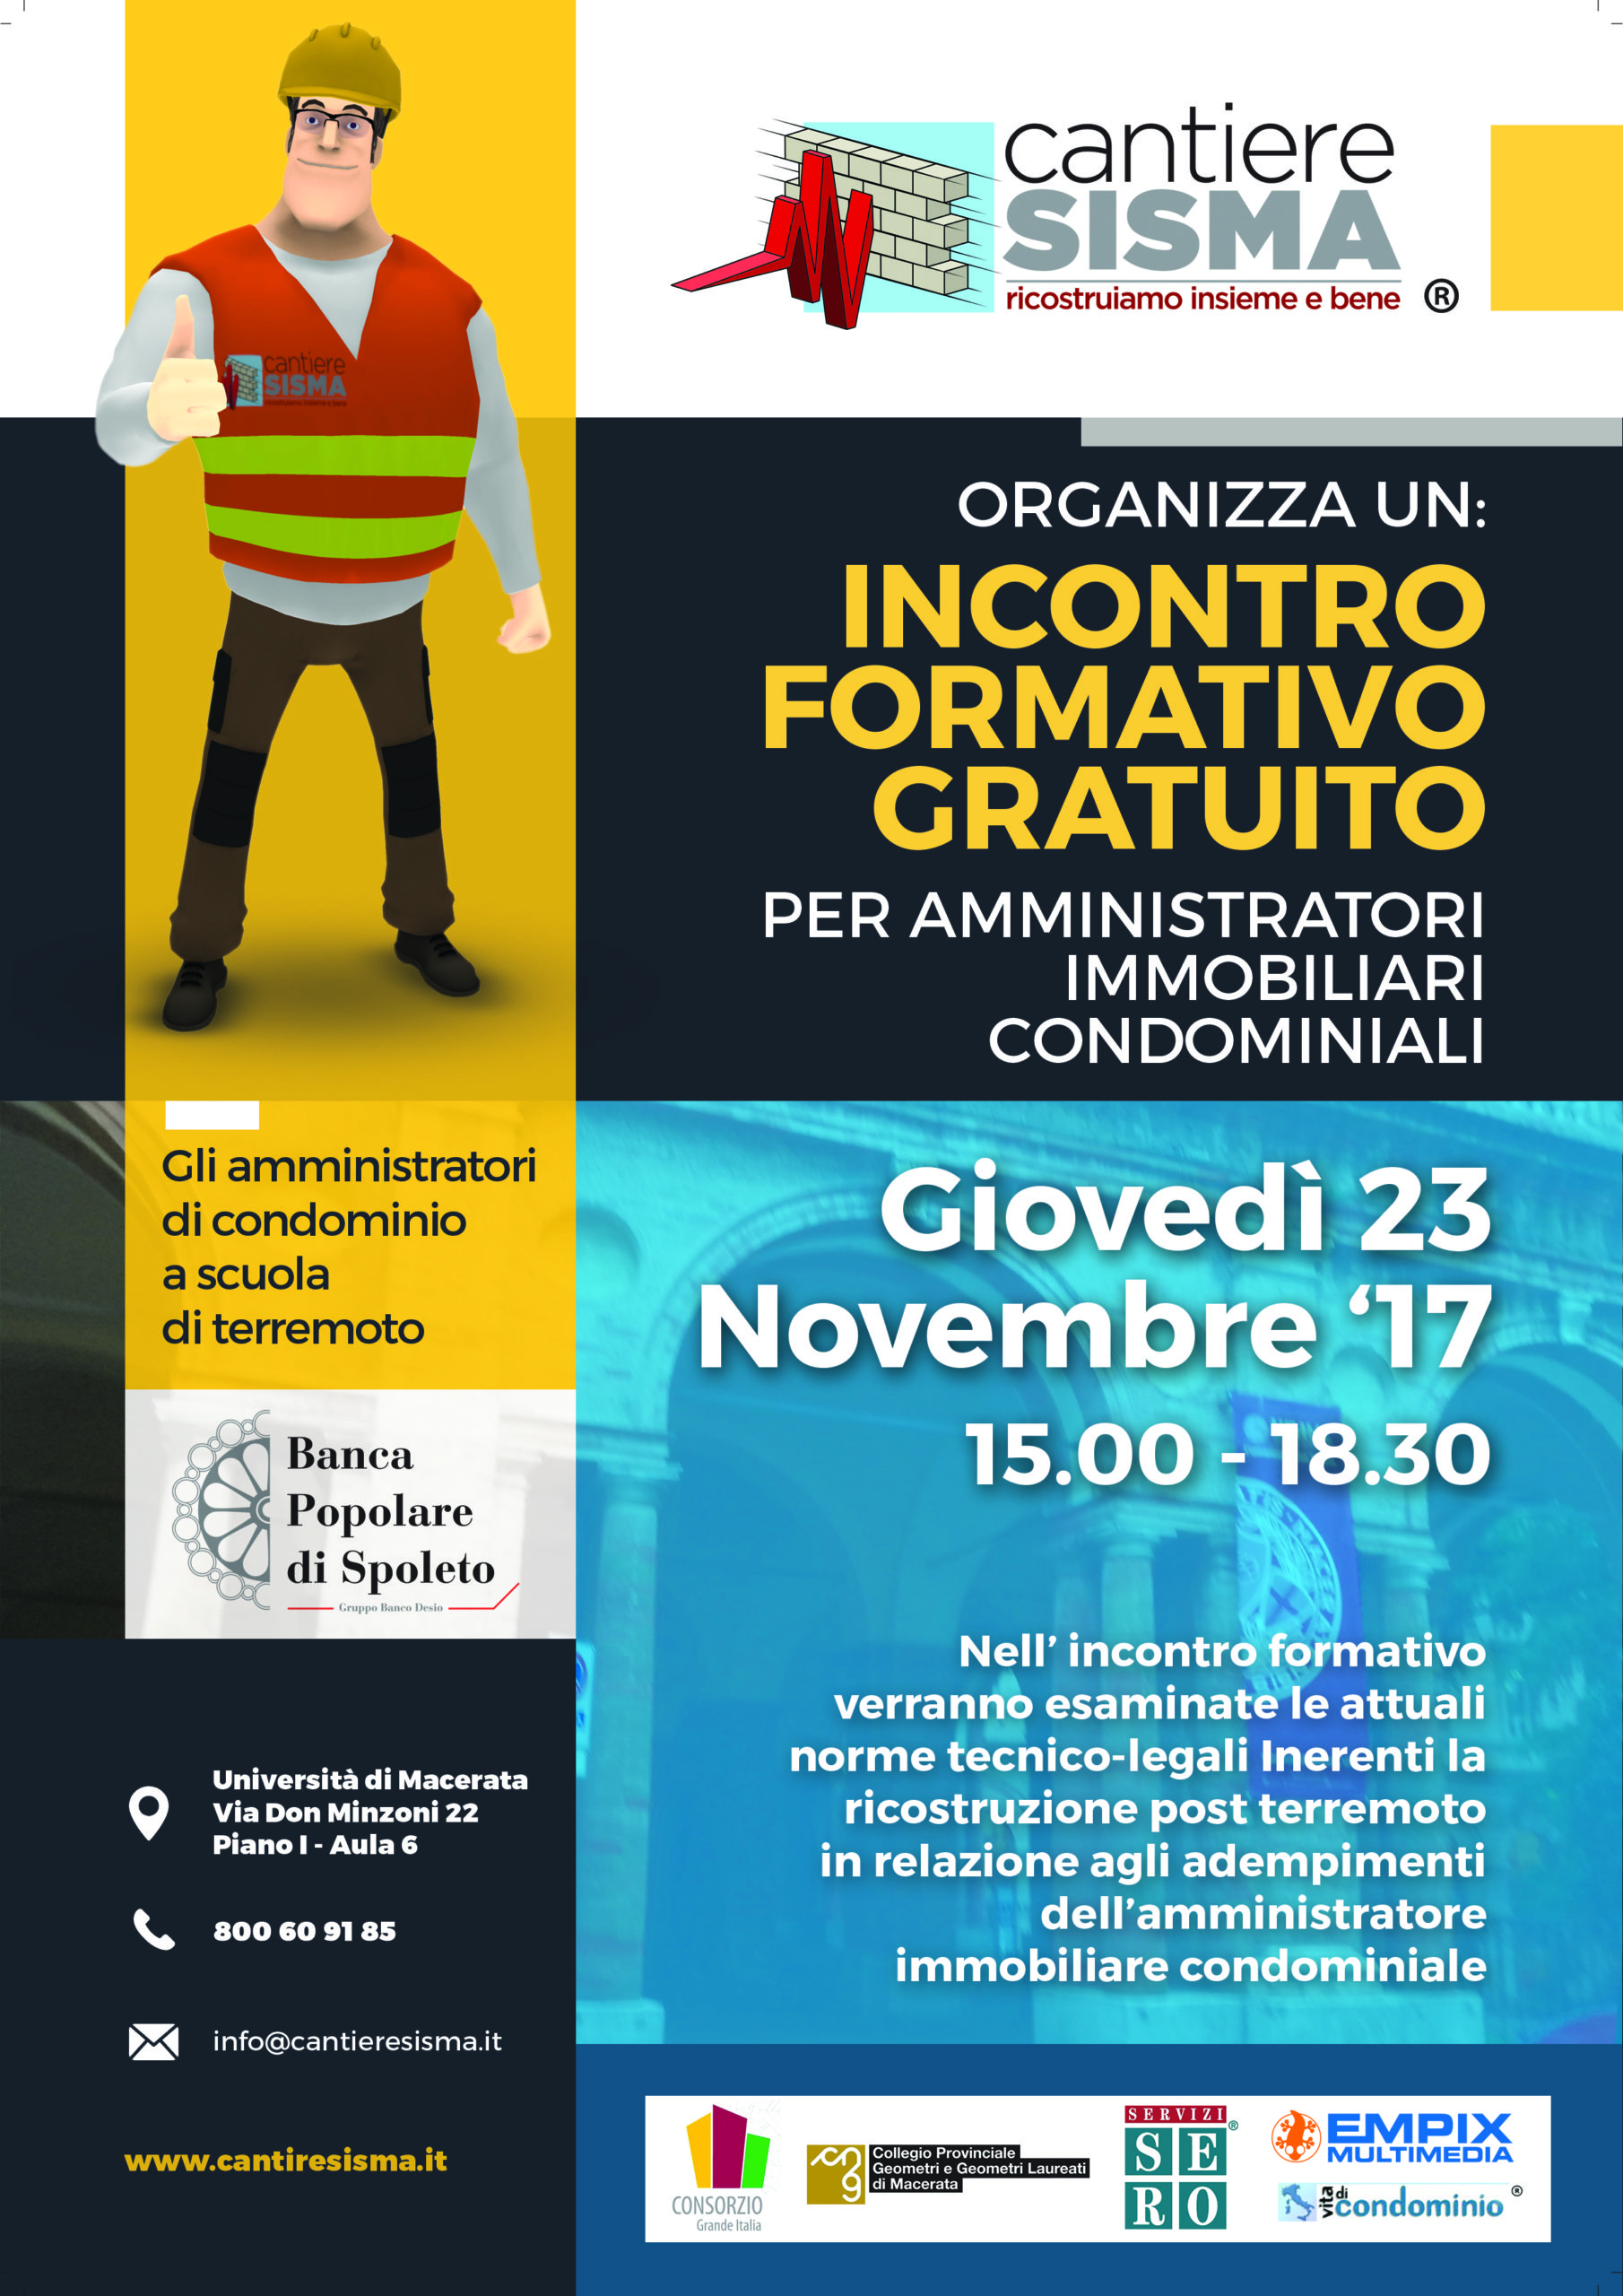 locandina evento cantiere sisma incontro formativo gratuito per amministratori condominiali immobiliari presso università di macerata